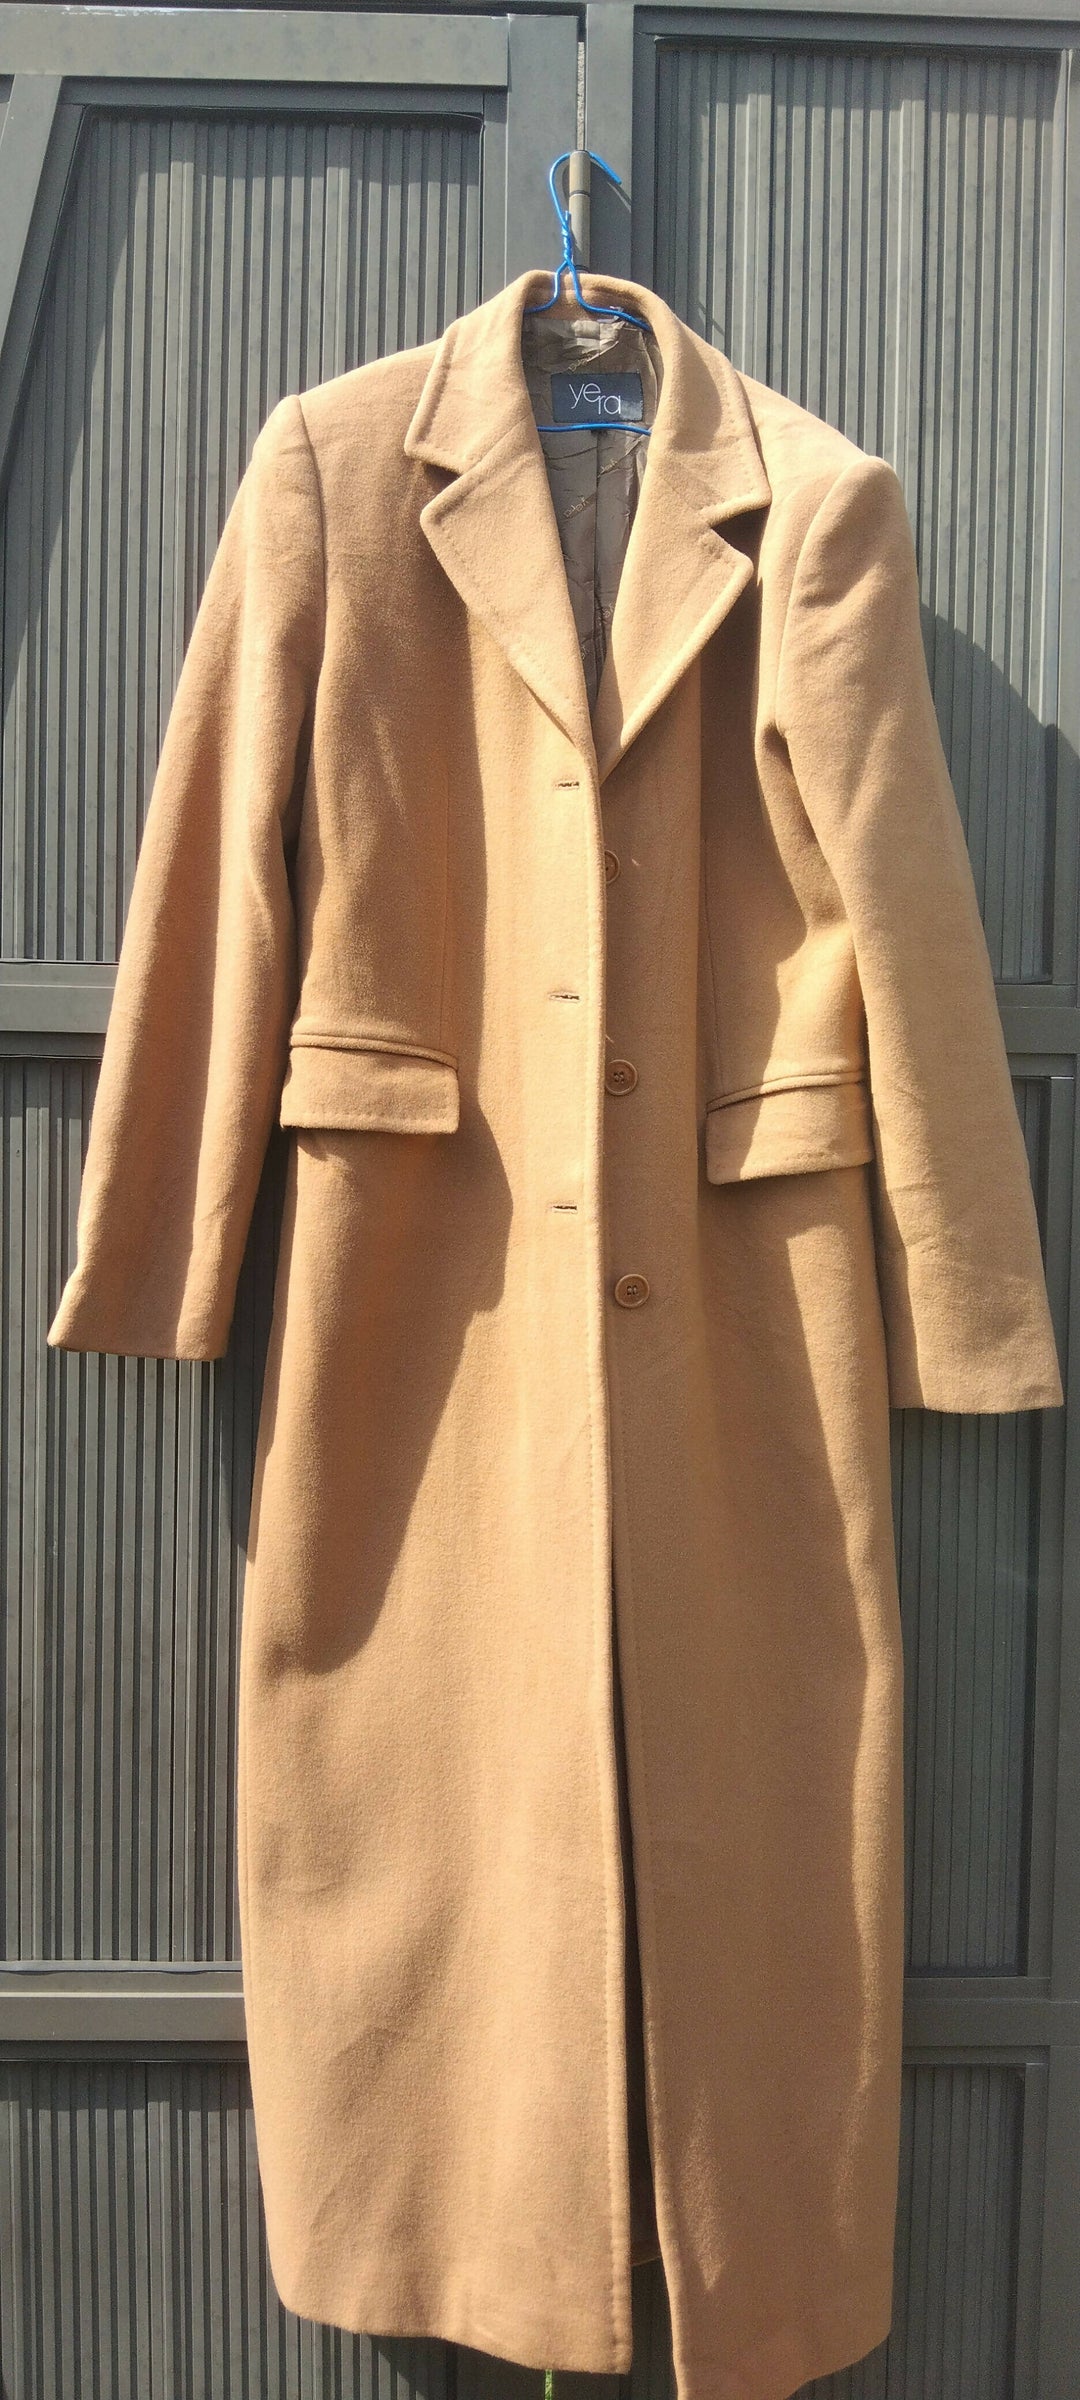 Image of Yera Long Coat